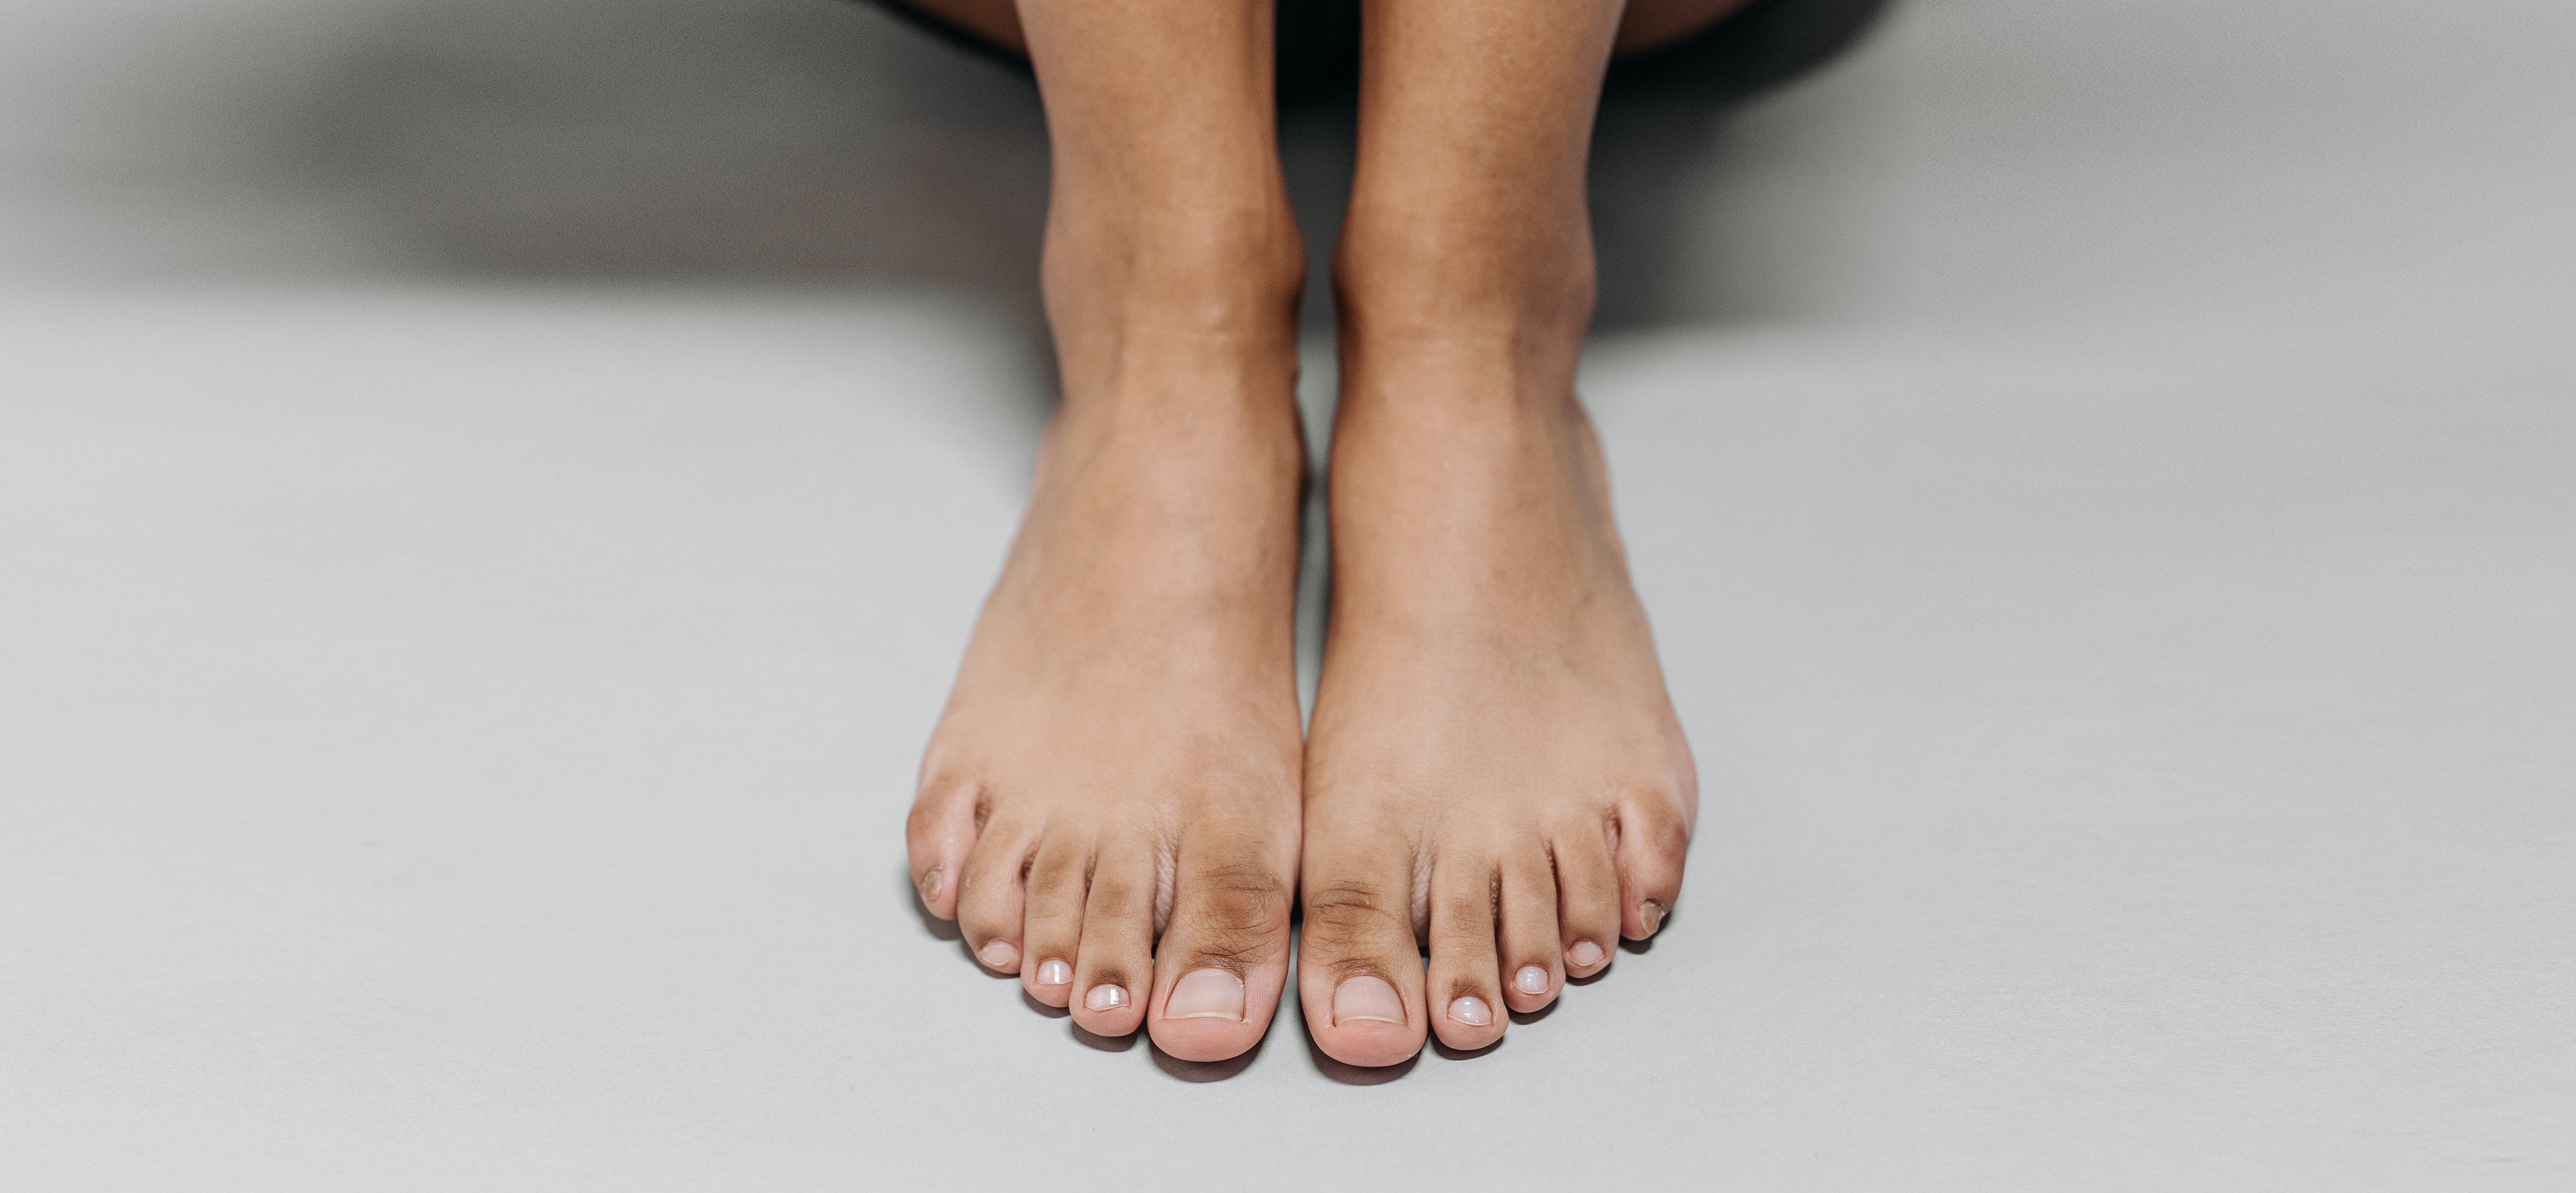 Hvordan bli kvitt smerter i føttene?